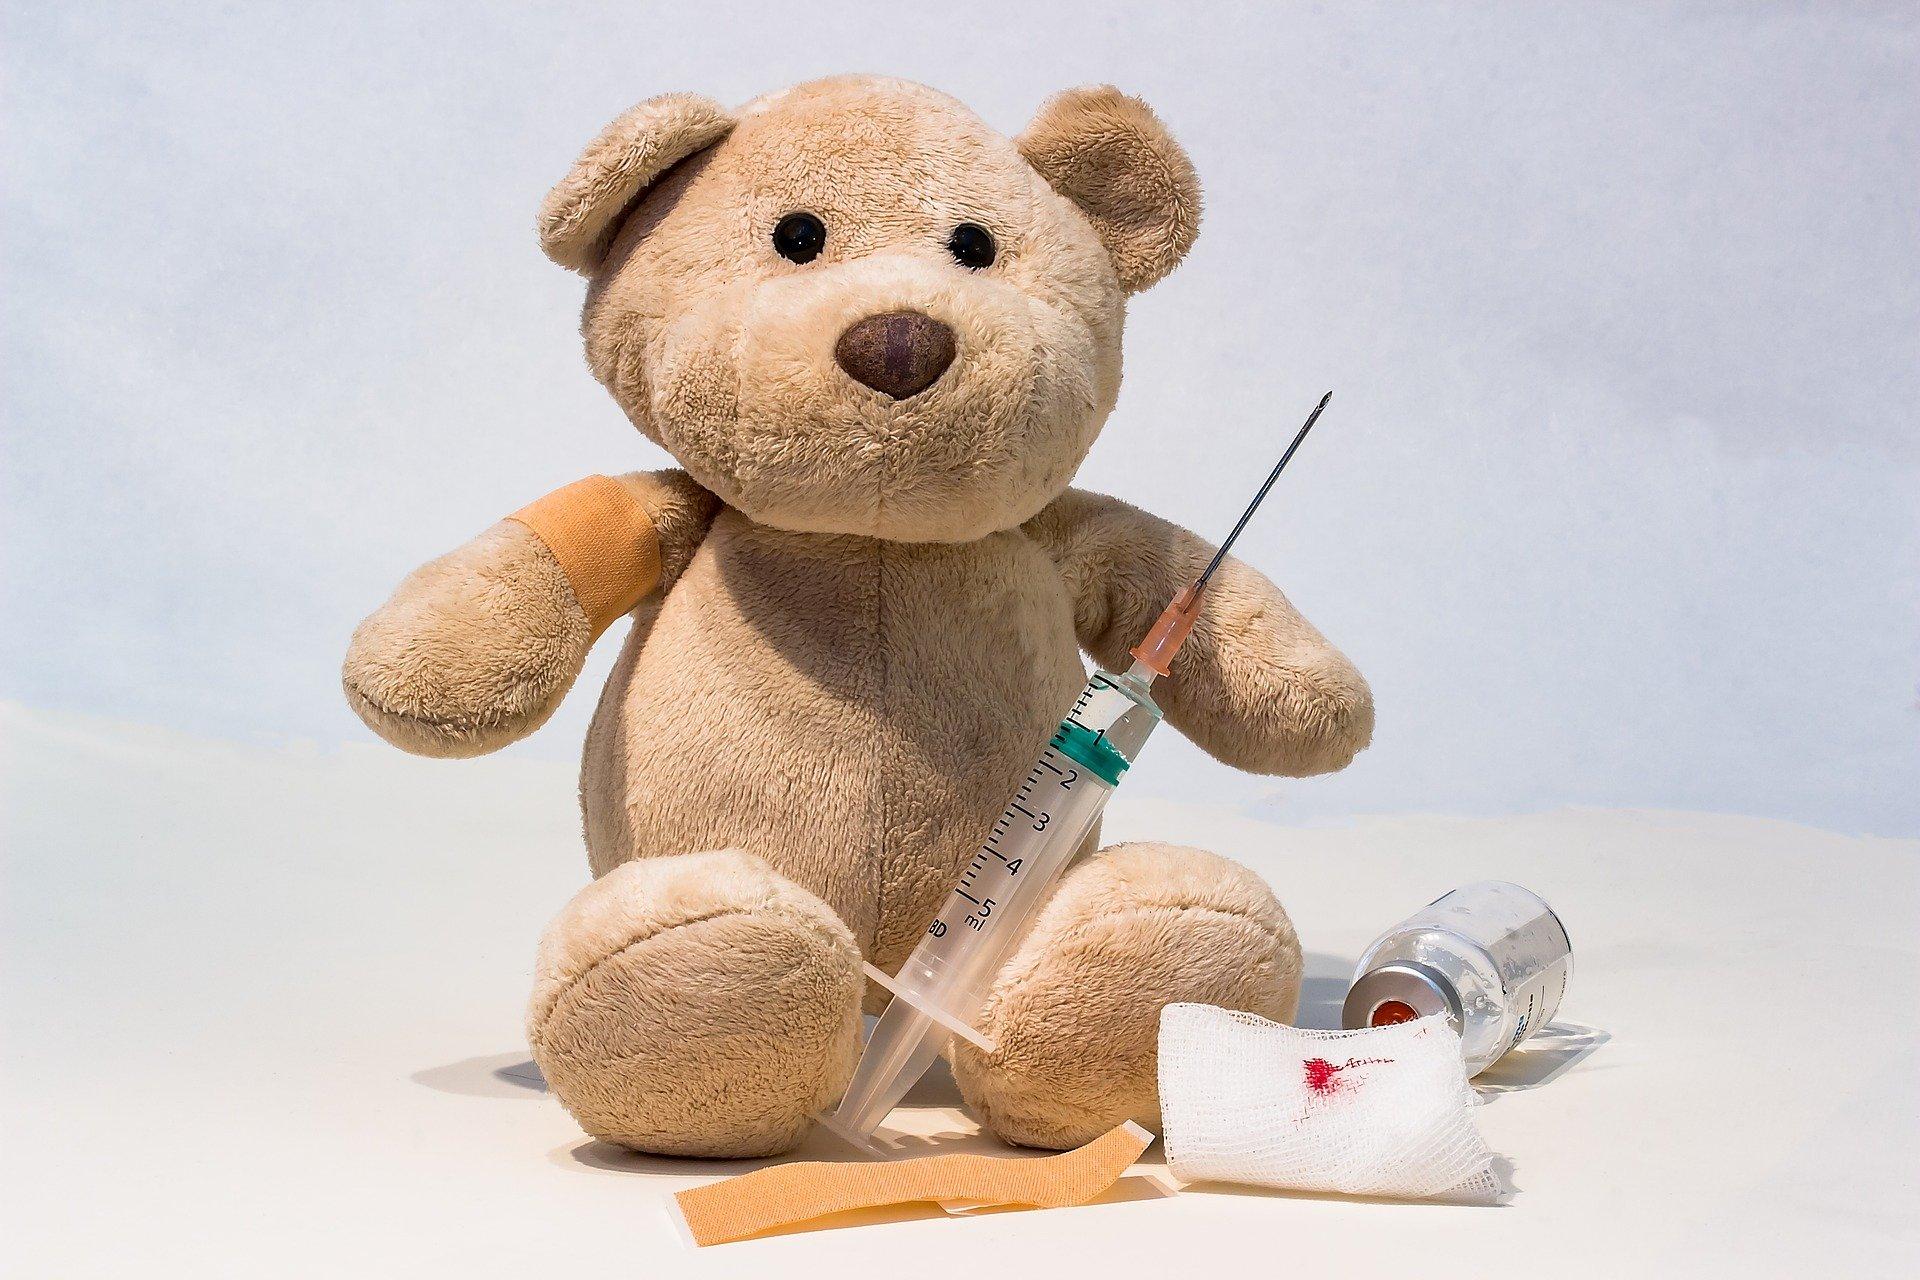 Impfung Teddy (myriams fotos - pixabay)